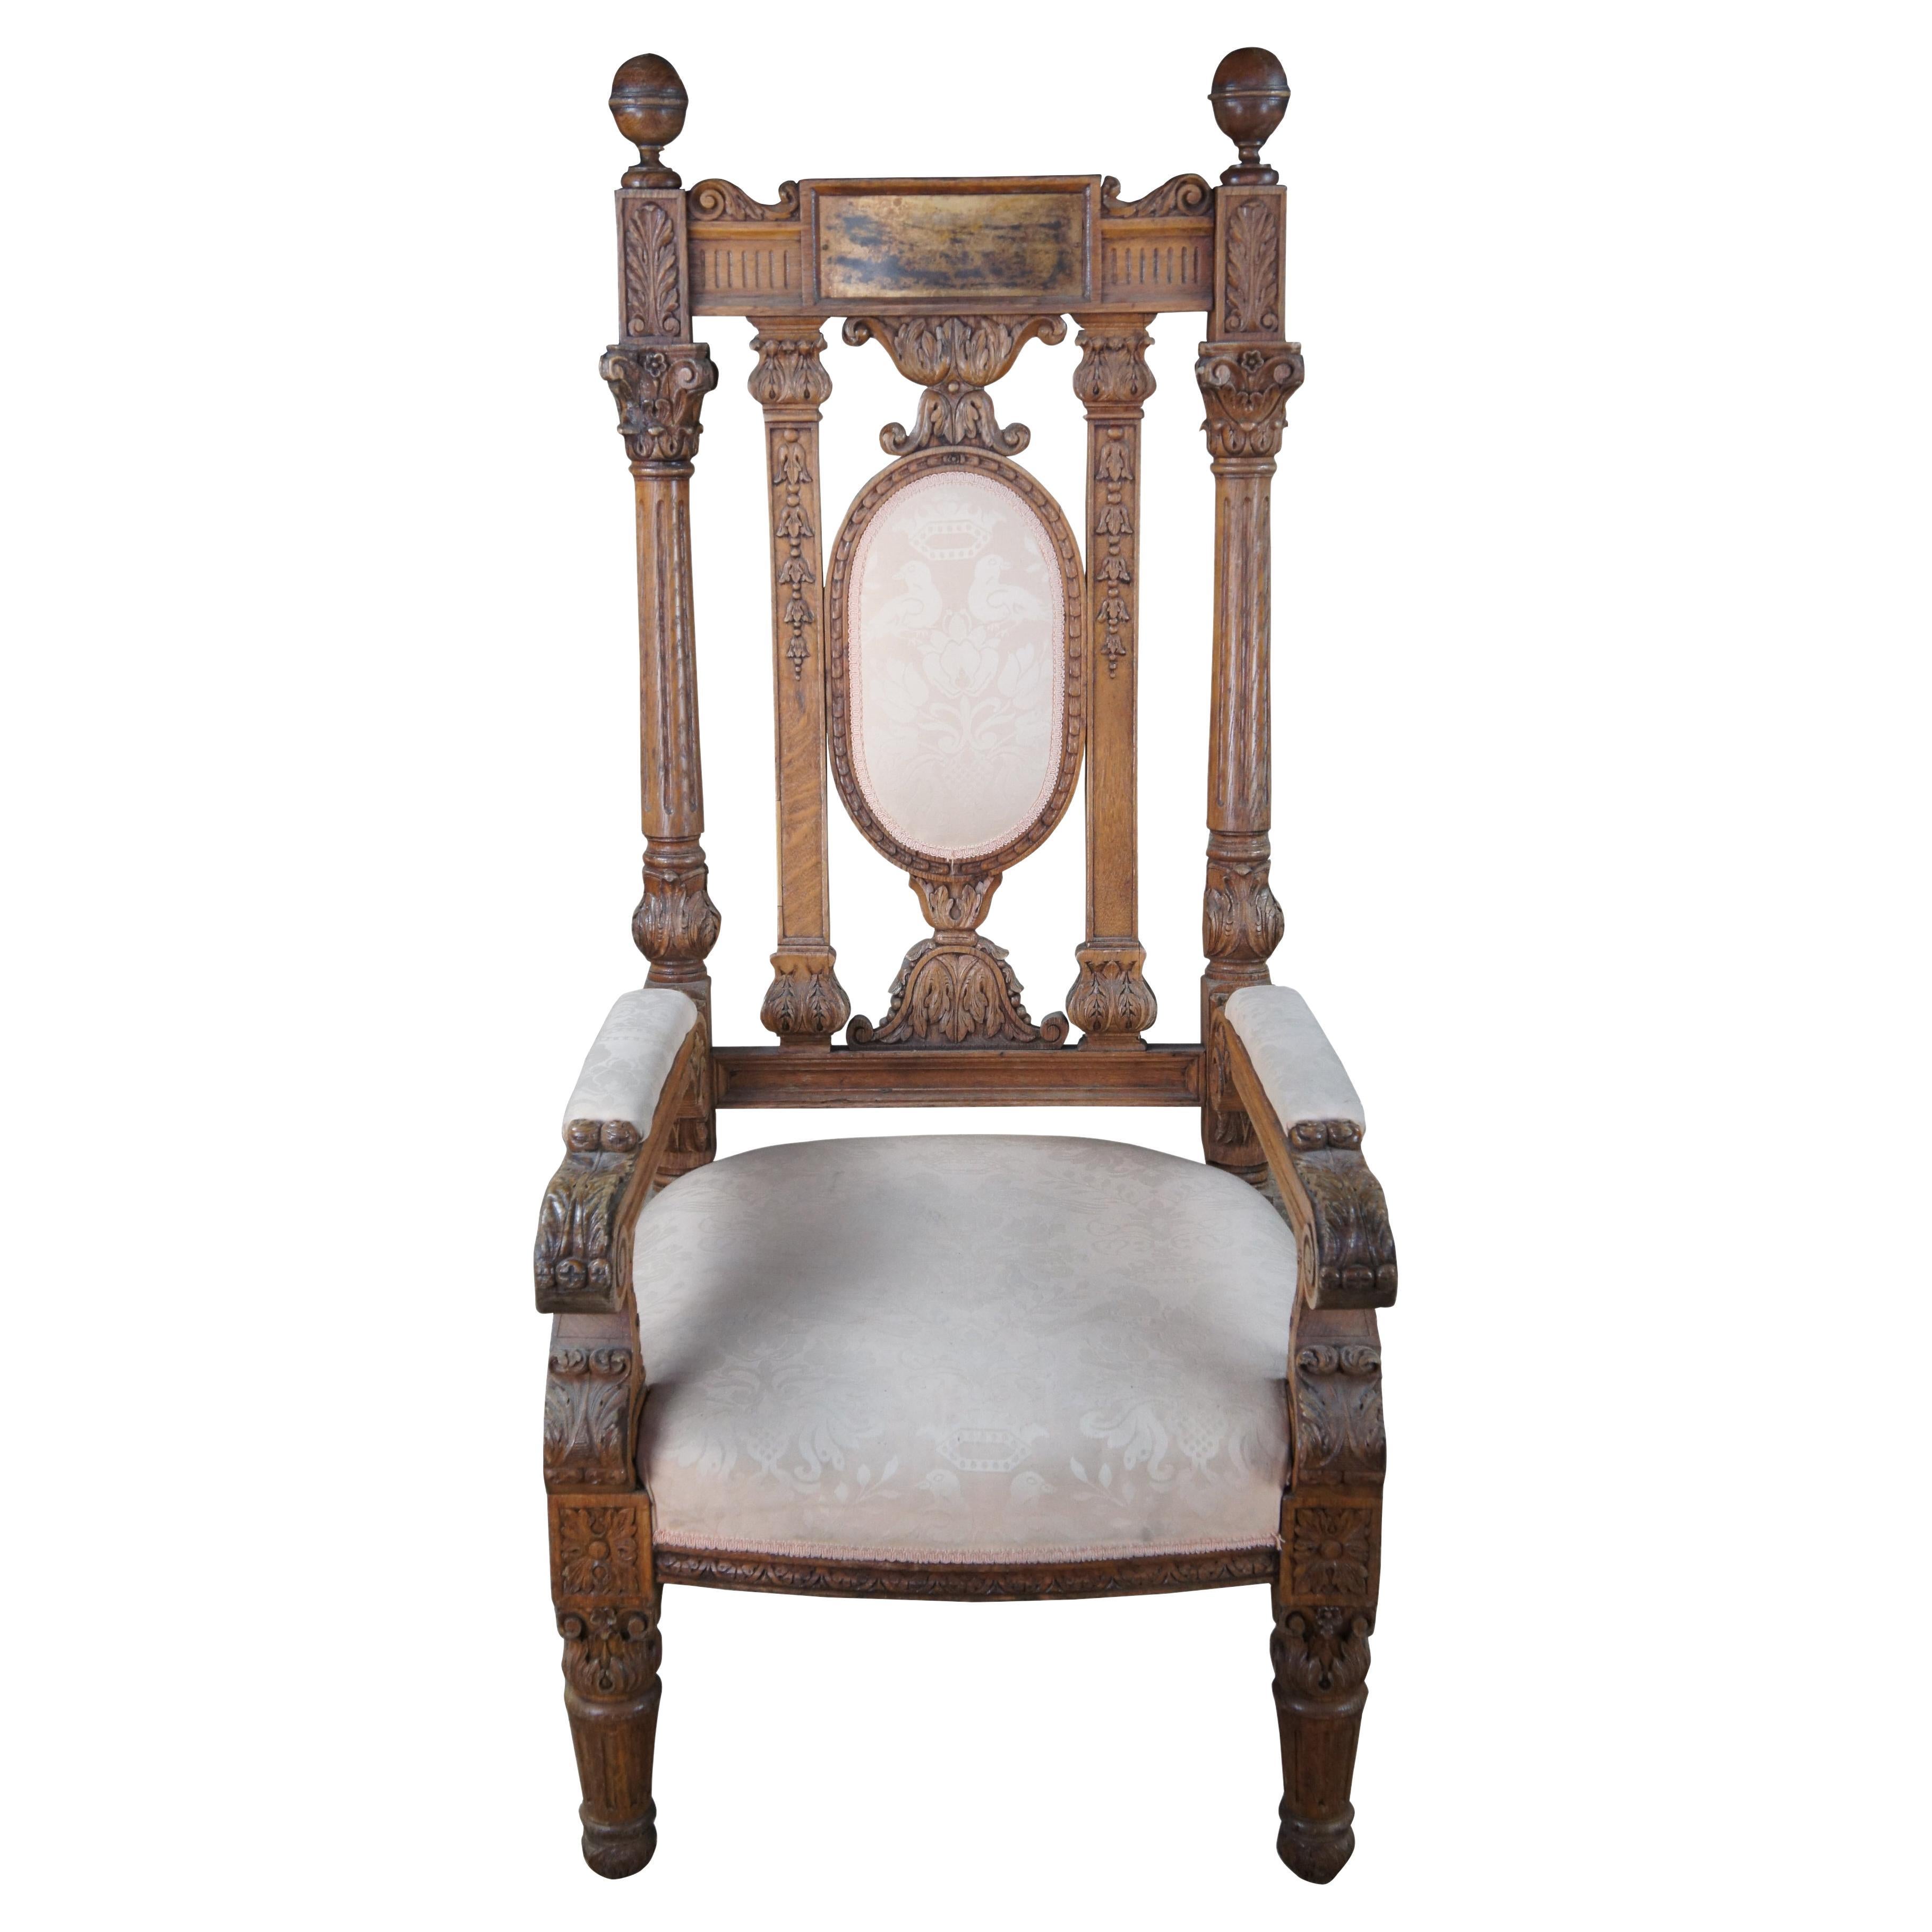 Monumental fauteuil trône victorien ancien orné en chêne sculpté 58 pouces